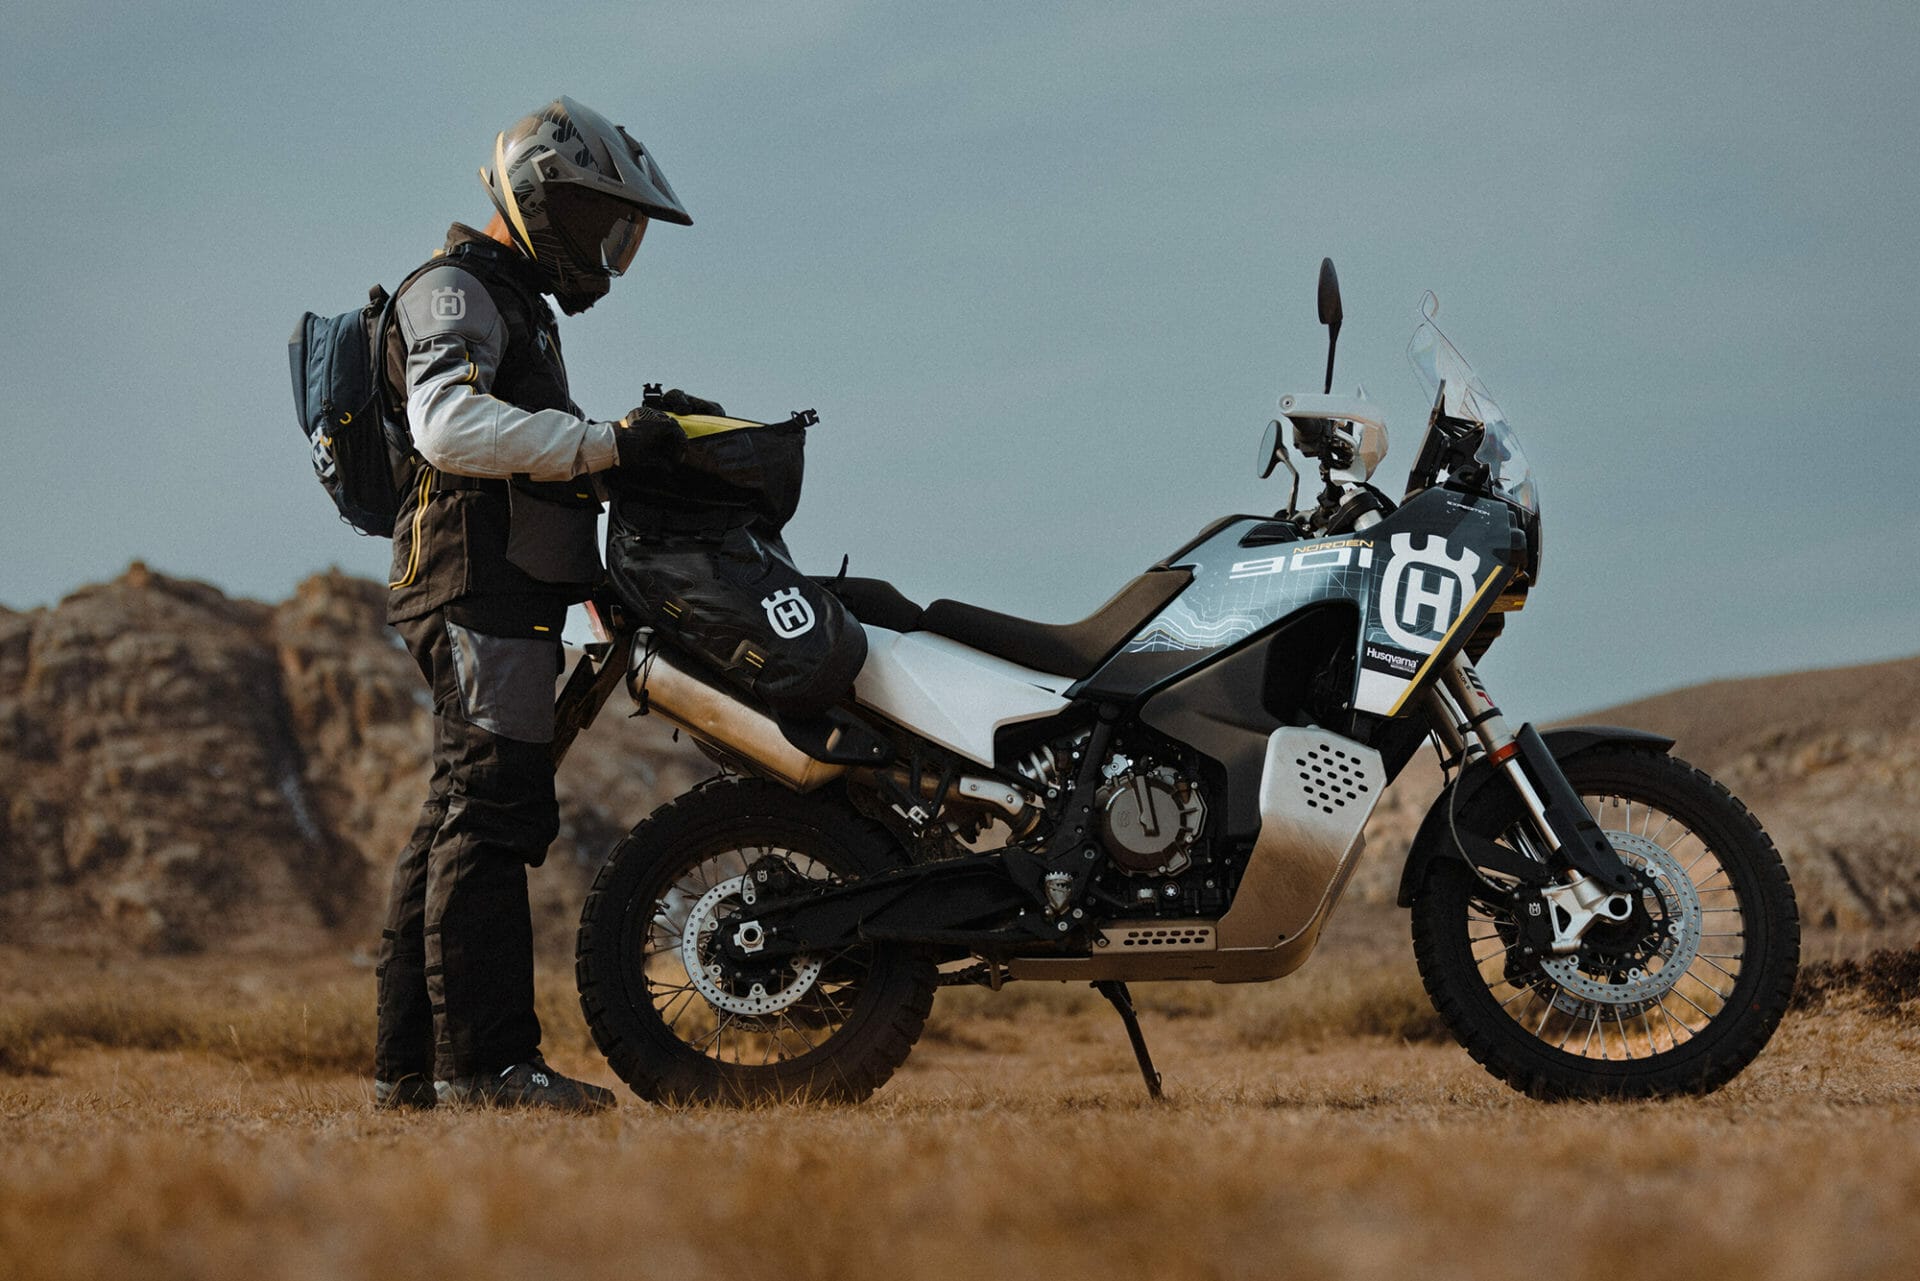 Husqvarna Motorcycles enthüllt die neue Norden 901 Expedition 2023 – Ein spannendes neues Touring-Motorrad für grenzenloses Abenteuer